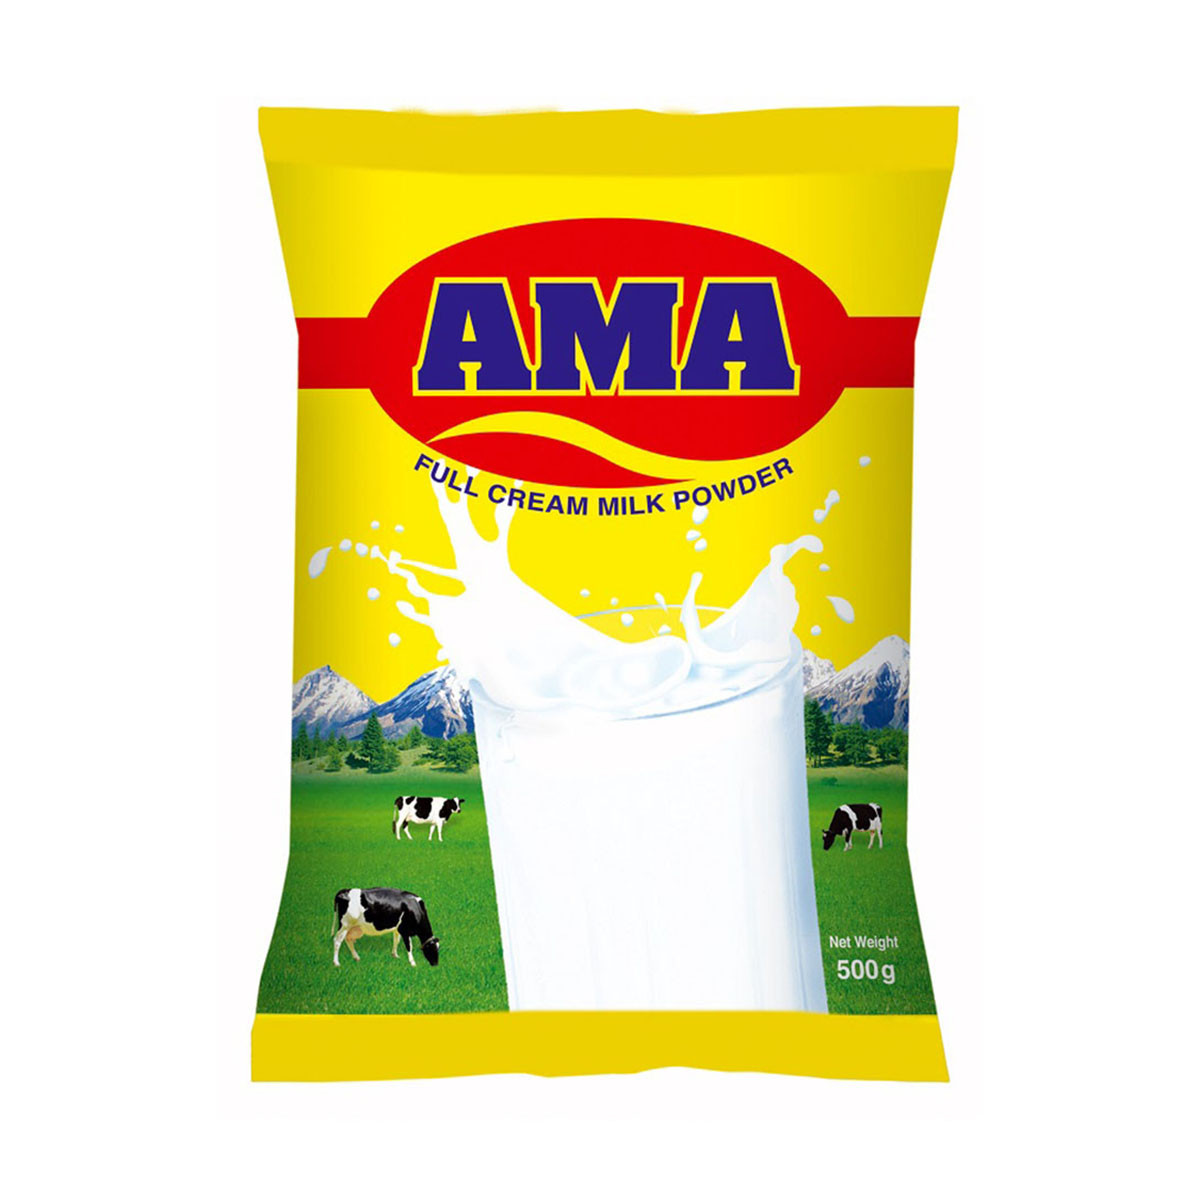 Ama Full Cream Milk Powder - 500gm (Foil Pack)